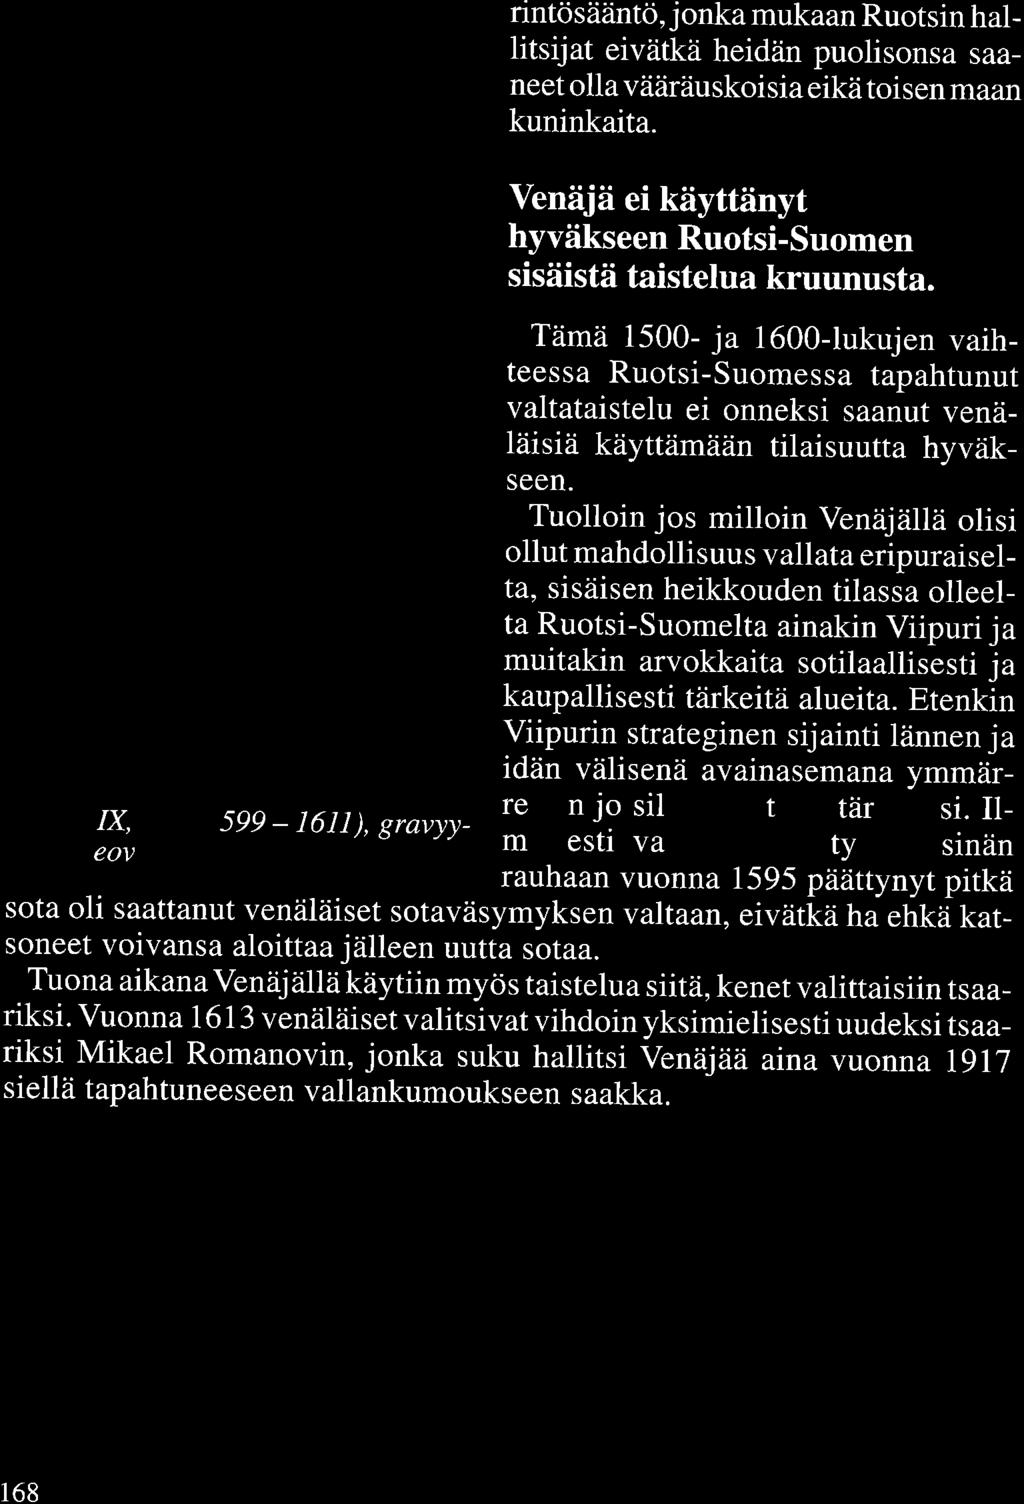 rintösääntö, jonka mukaan Ruotsin hallitsijat eivätkä heidän puolisonsa saaneet olla vääräuskoisia eikä toisen maan kuninkaita.